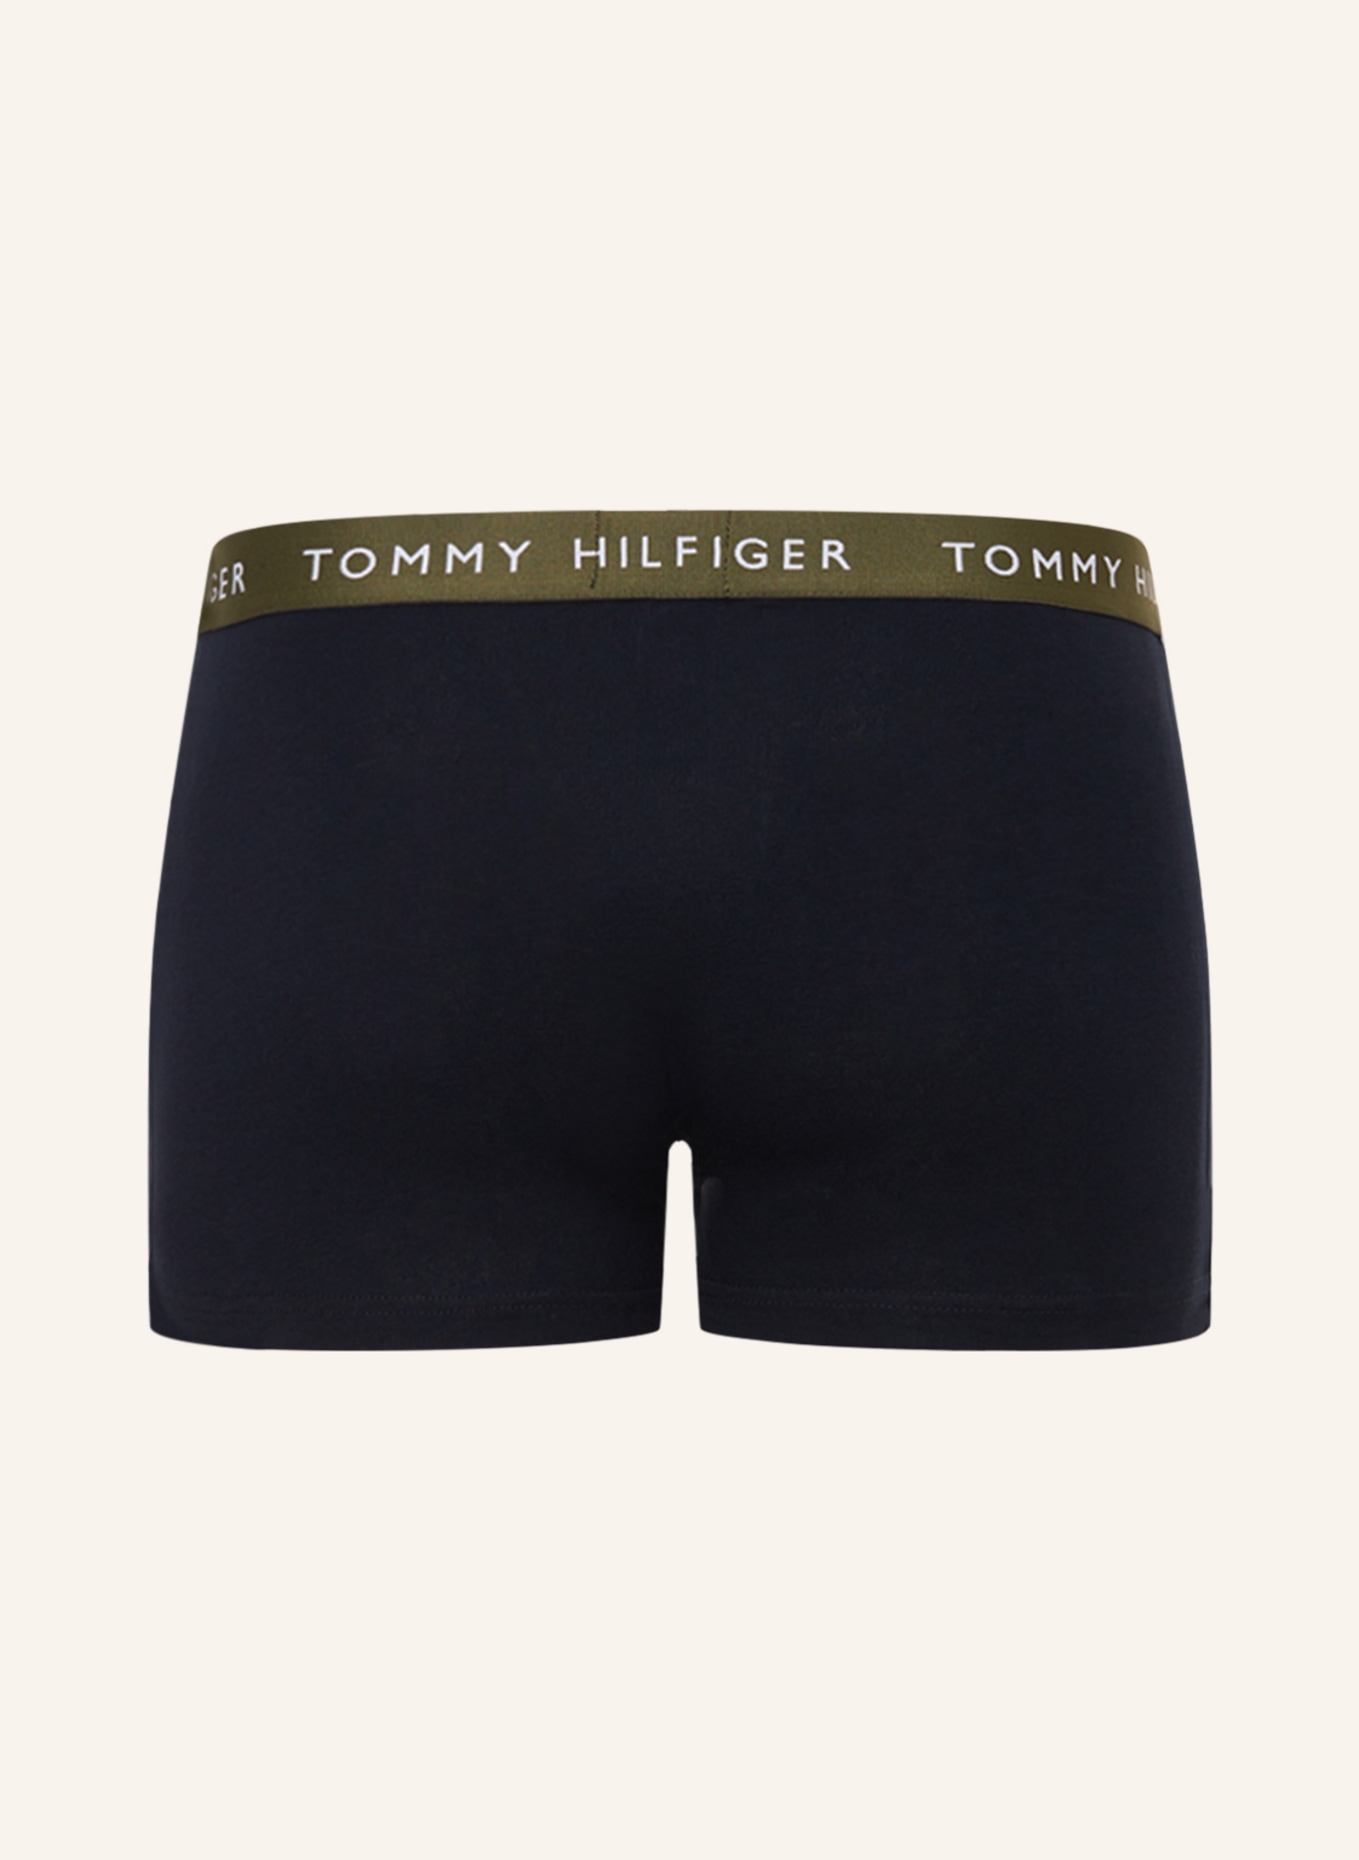 TOMMY HILFIGER 3er-Pack Boxershorts , Farbe: OLIV/ DUNKELGRAU/ BLAU (Bild 2)